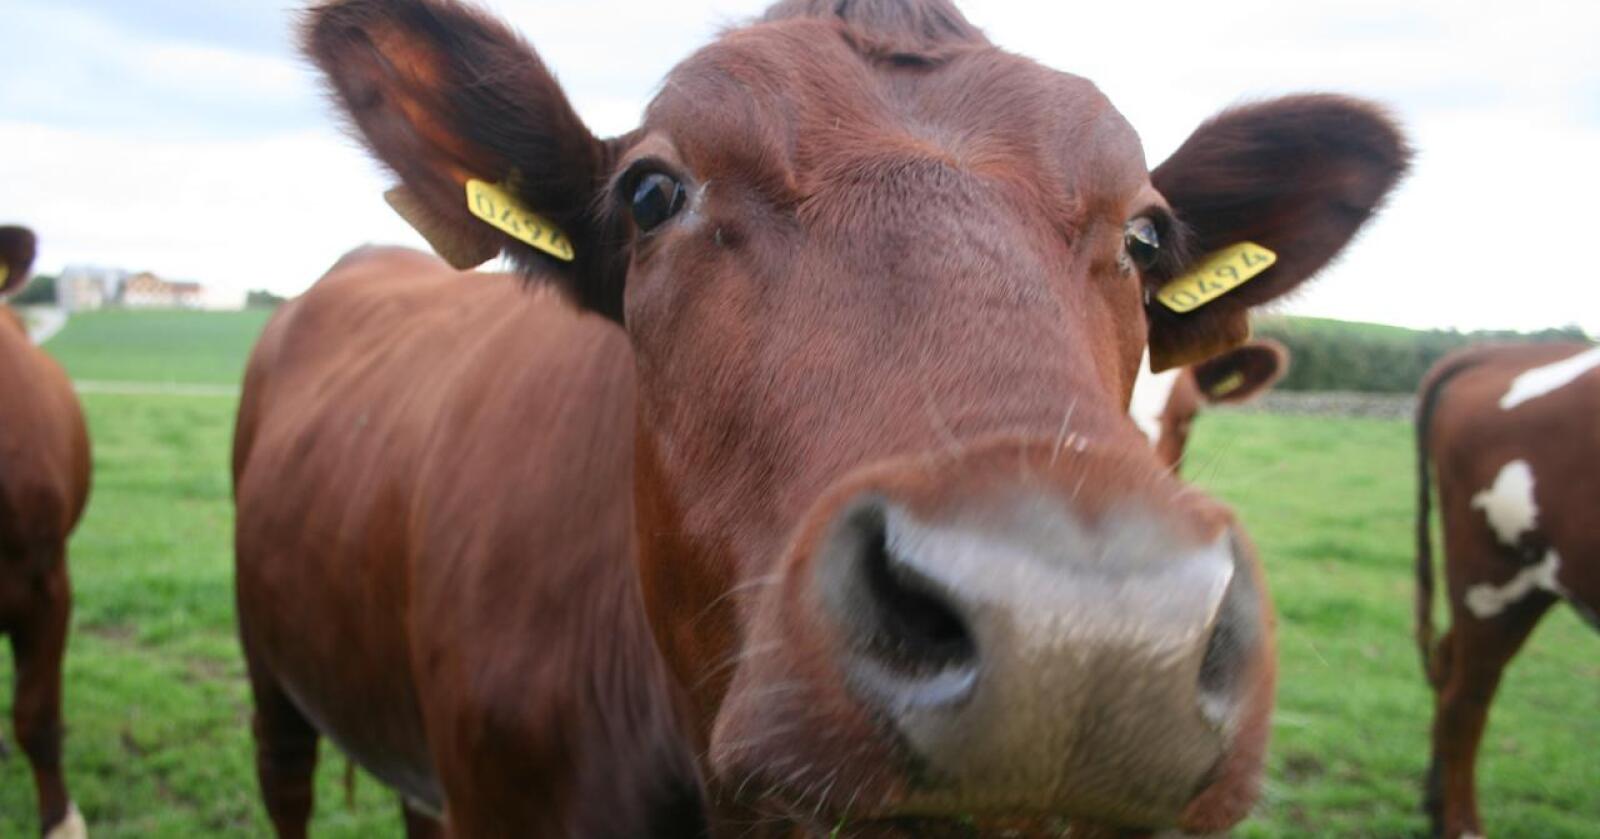 Kostnadsvekst: Trass i at betalinga for mjølk og kjøtt har gått opp i løpet av vinteren vil inntektene til mange husdyrbønder stupe i år, viser ny utrekning. Økonom ventar store utfordringar i jordbruksoppgjeret. Foto: Bjarne Bekkeheien Aase